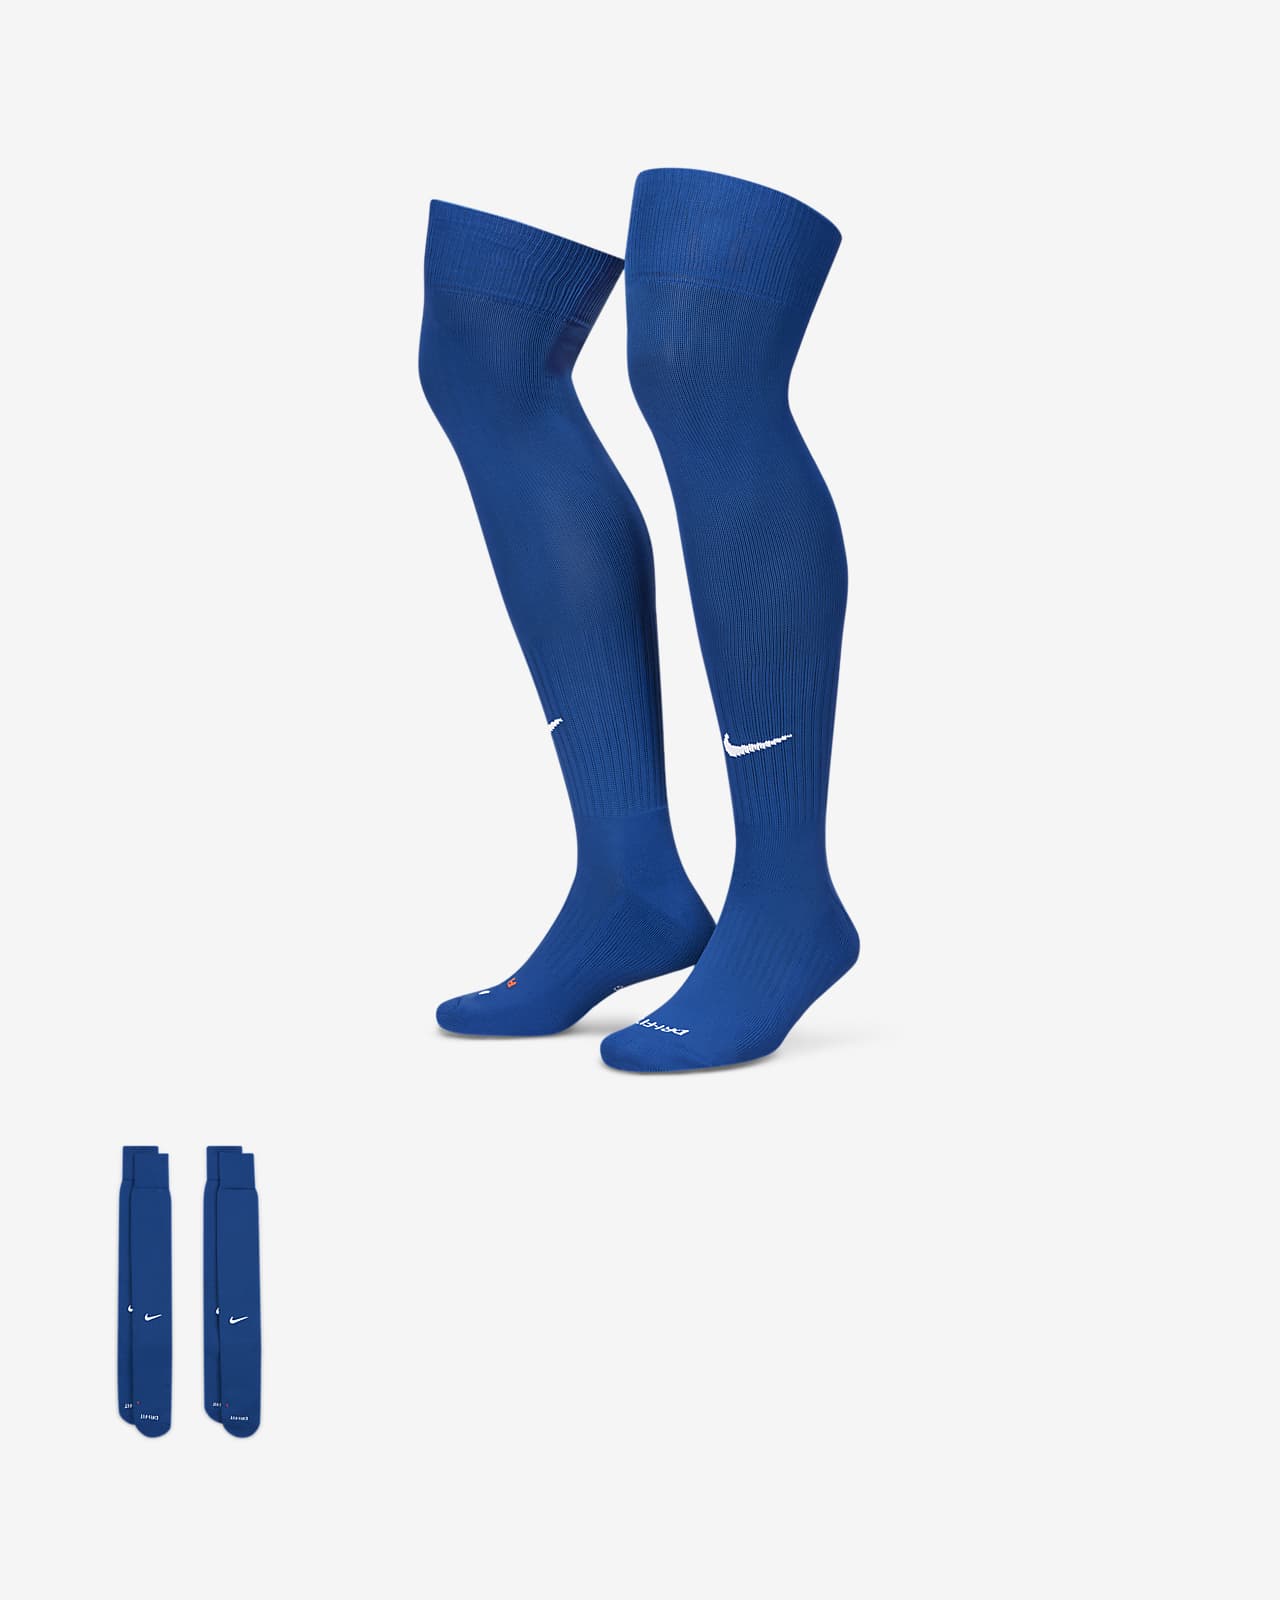 Calcetines de Béisbol/Softbol hasta la rodilla para niños (2 pares) Nike Swoosh Nike